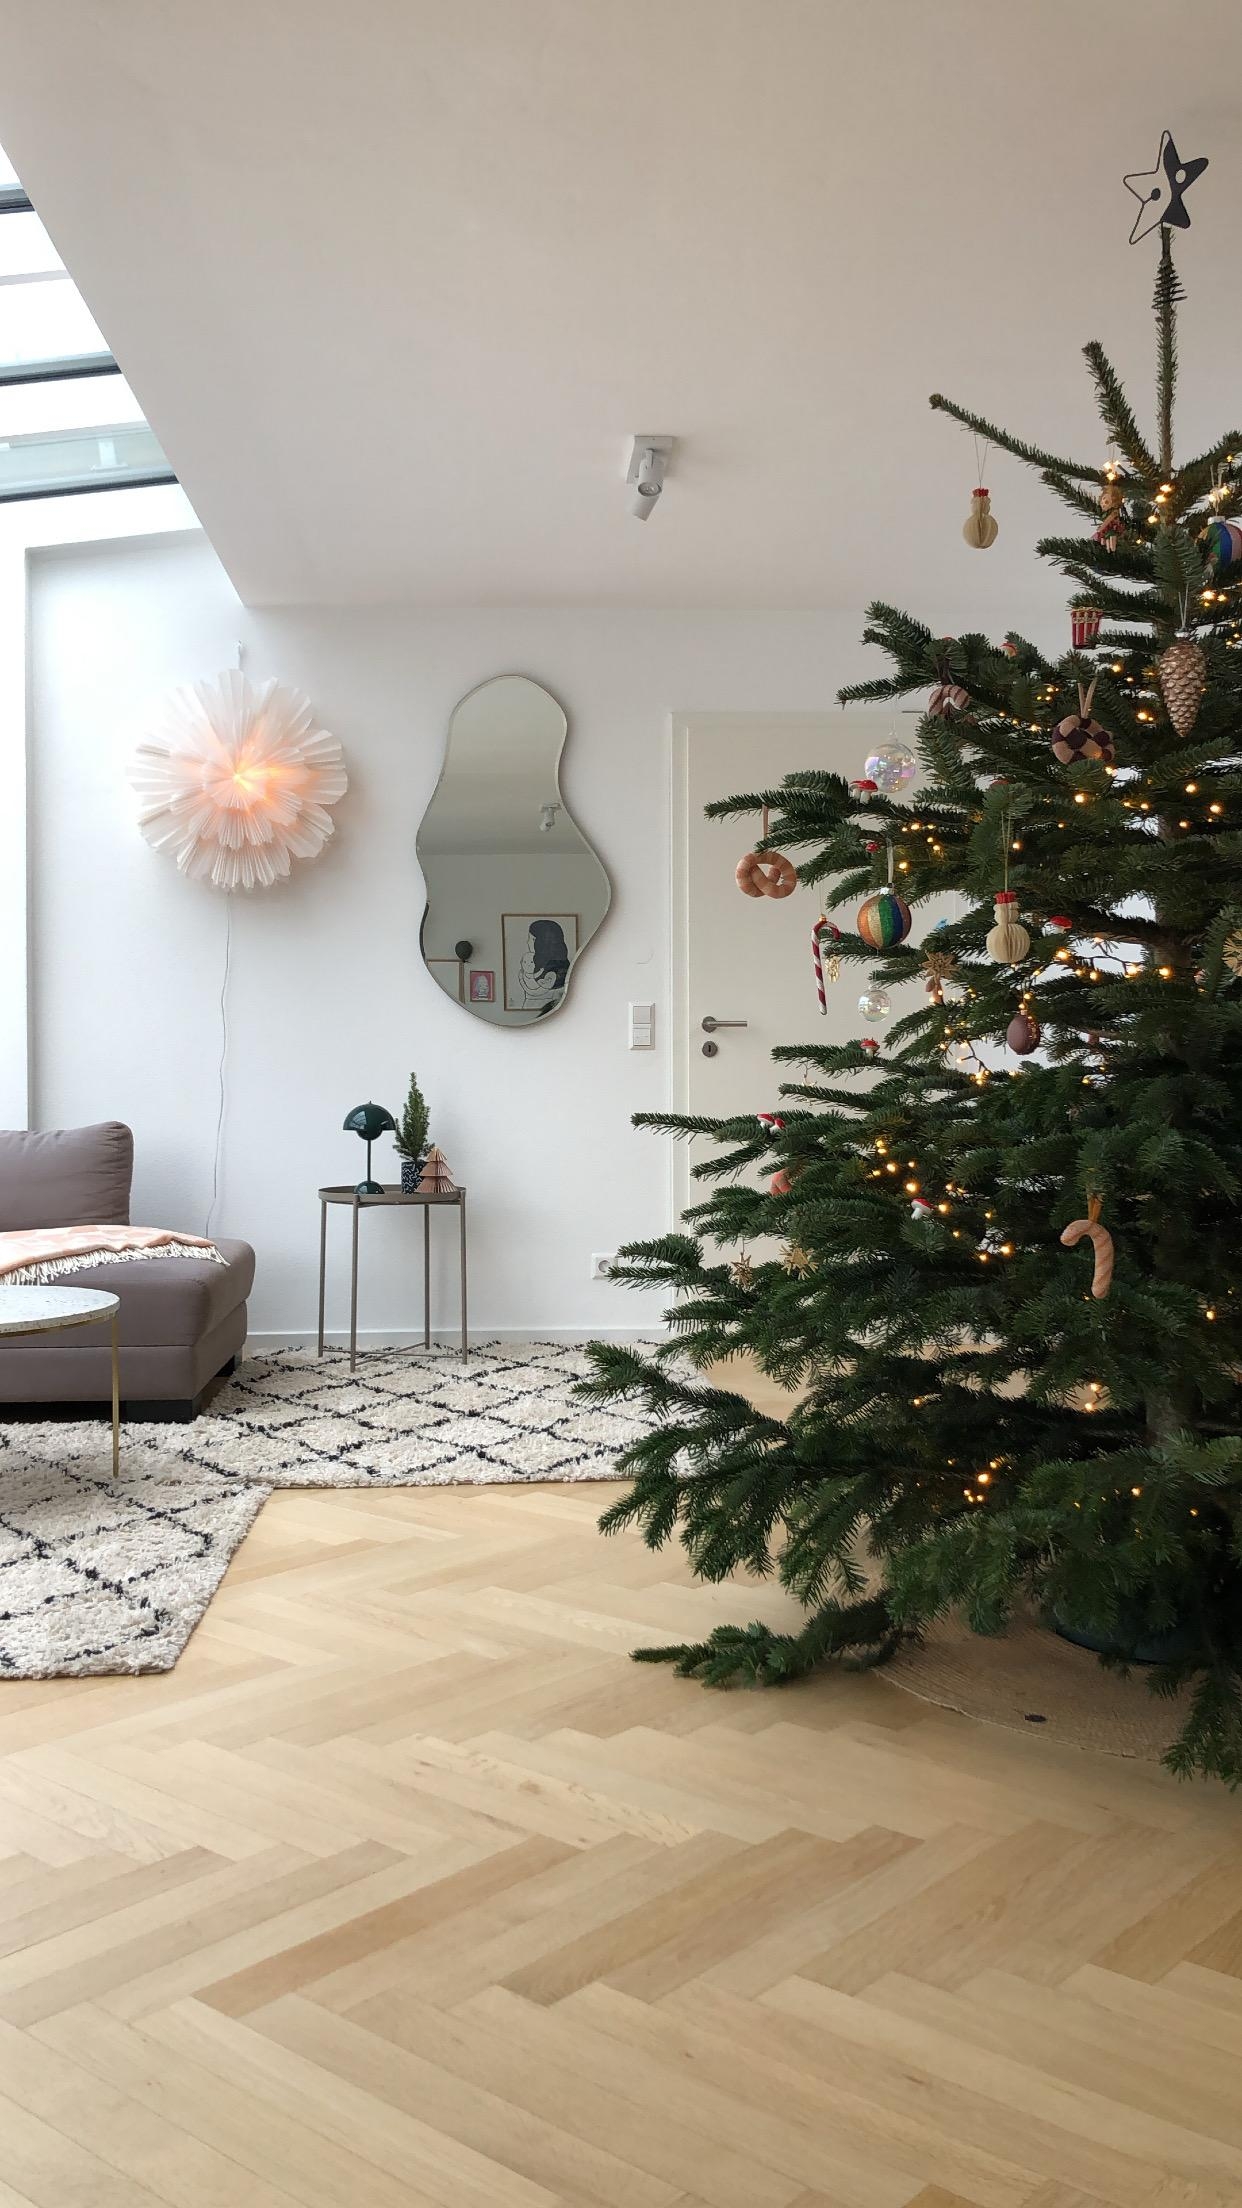 Unser Baum - zur Hälfte zumindest... 🎄✨
#weihnachtsbaum #wohnzimmer #christmastree 